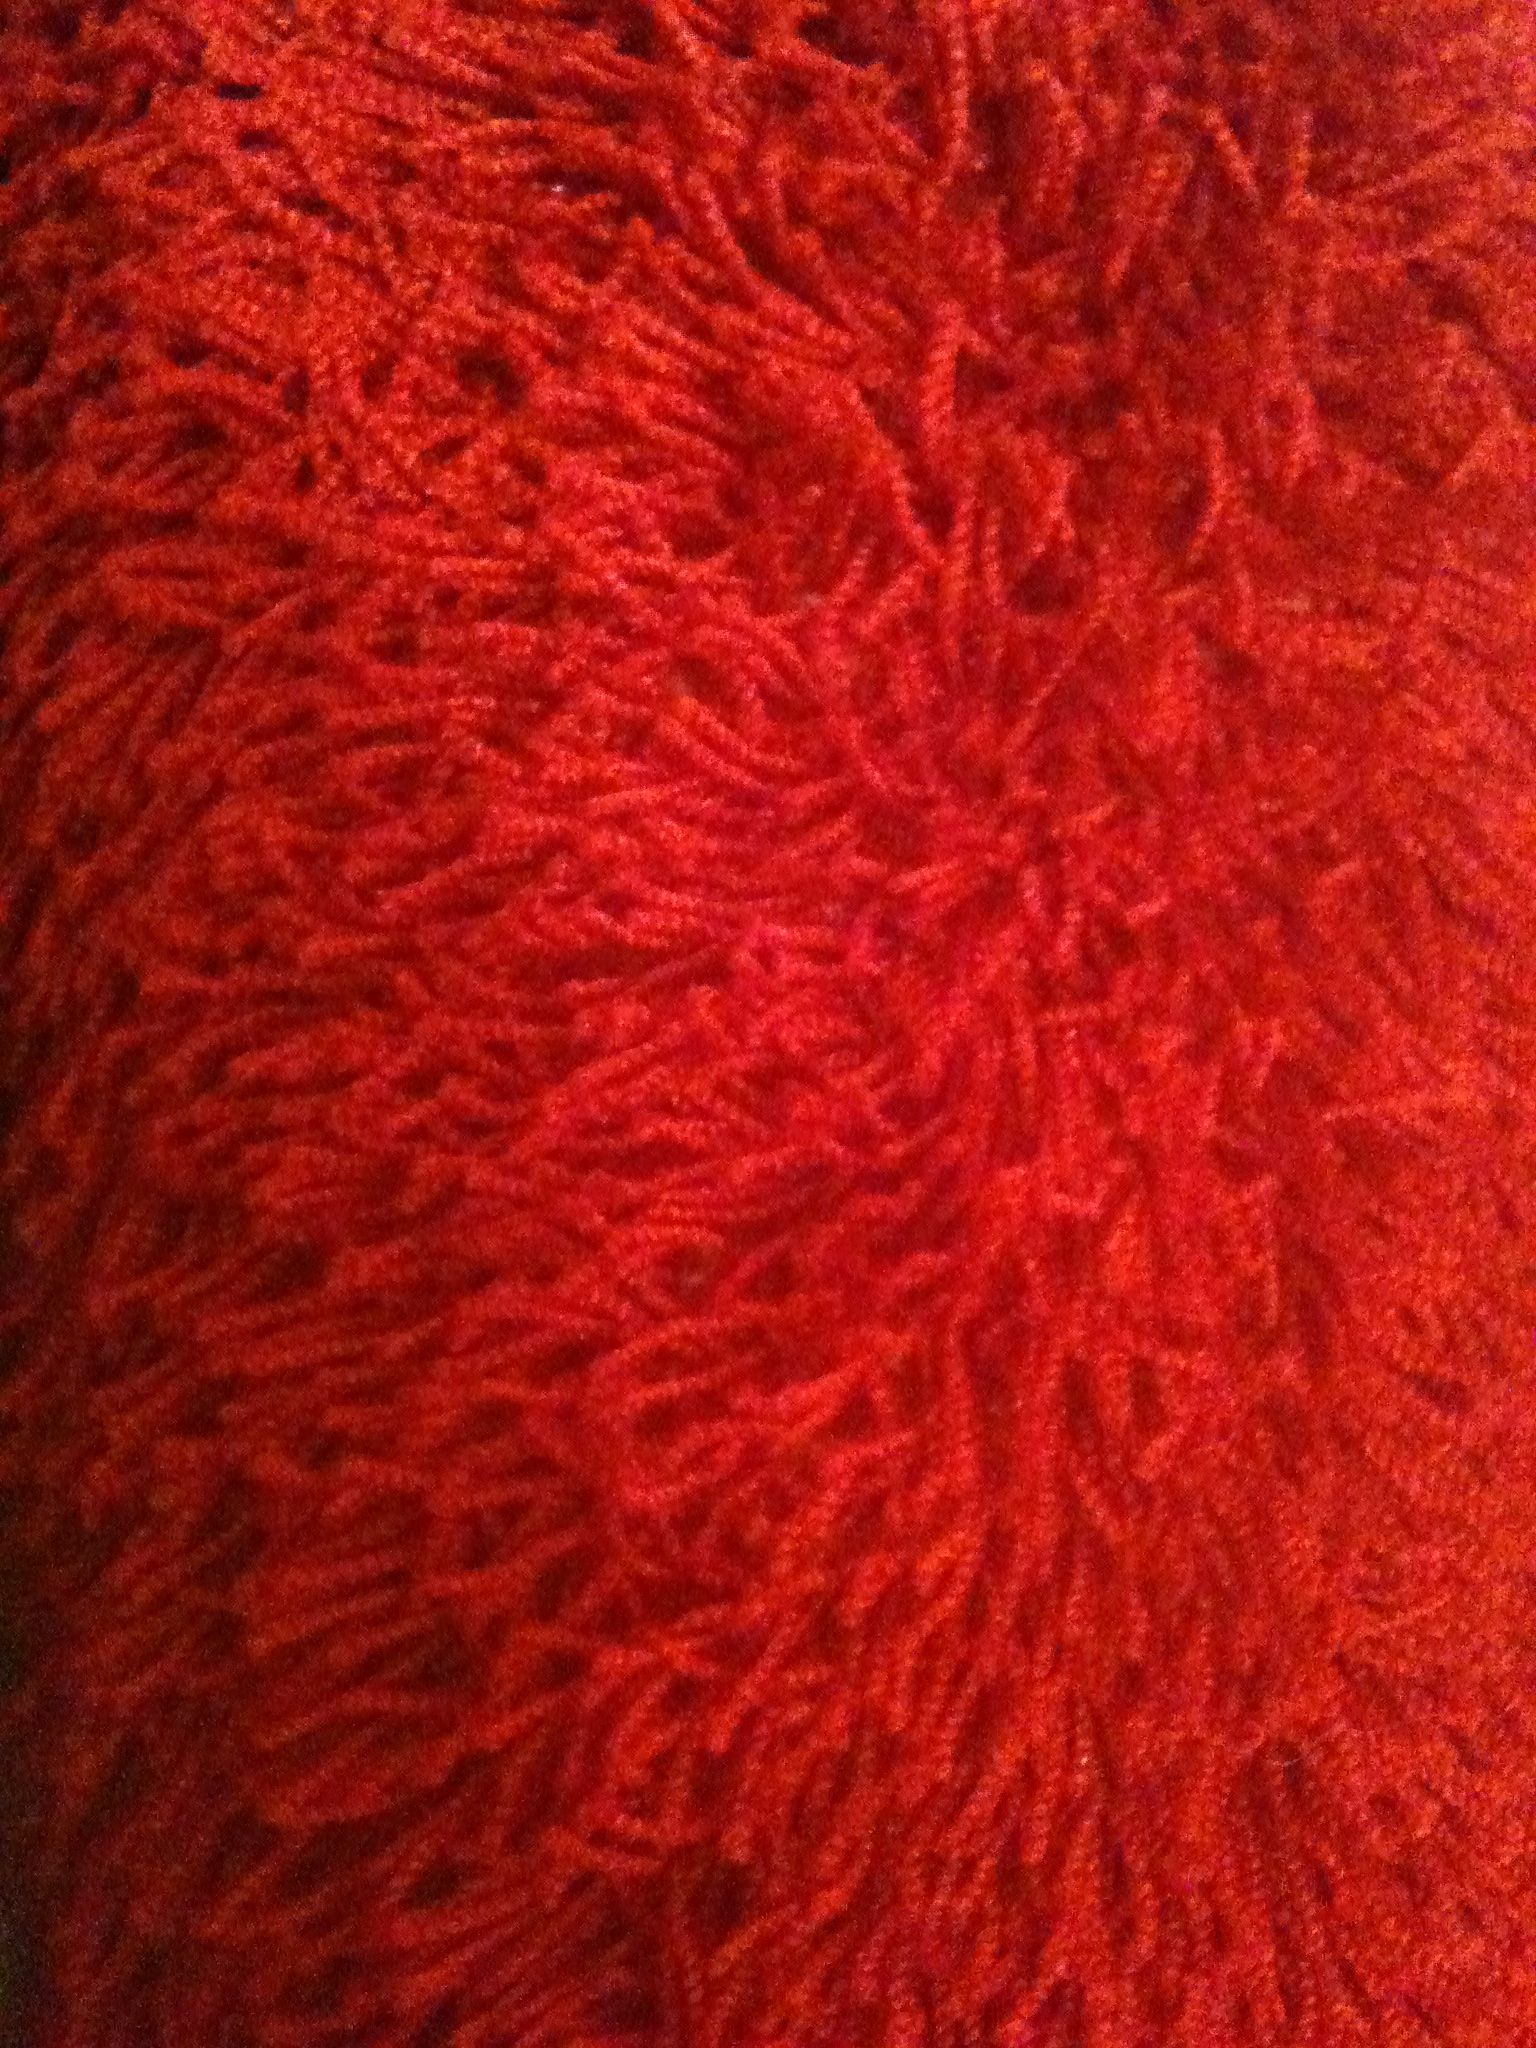 hoogplog karpet rood 170 x 230 cm – Langenbach tapijt De goedkoopste leverancier van karpetten en vloerkleden. Kuntgras gras voordelig